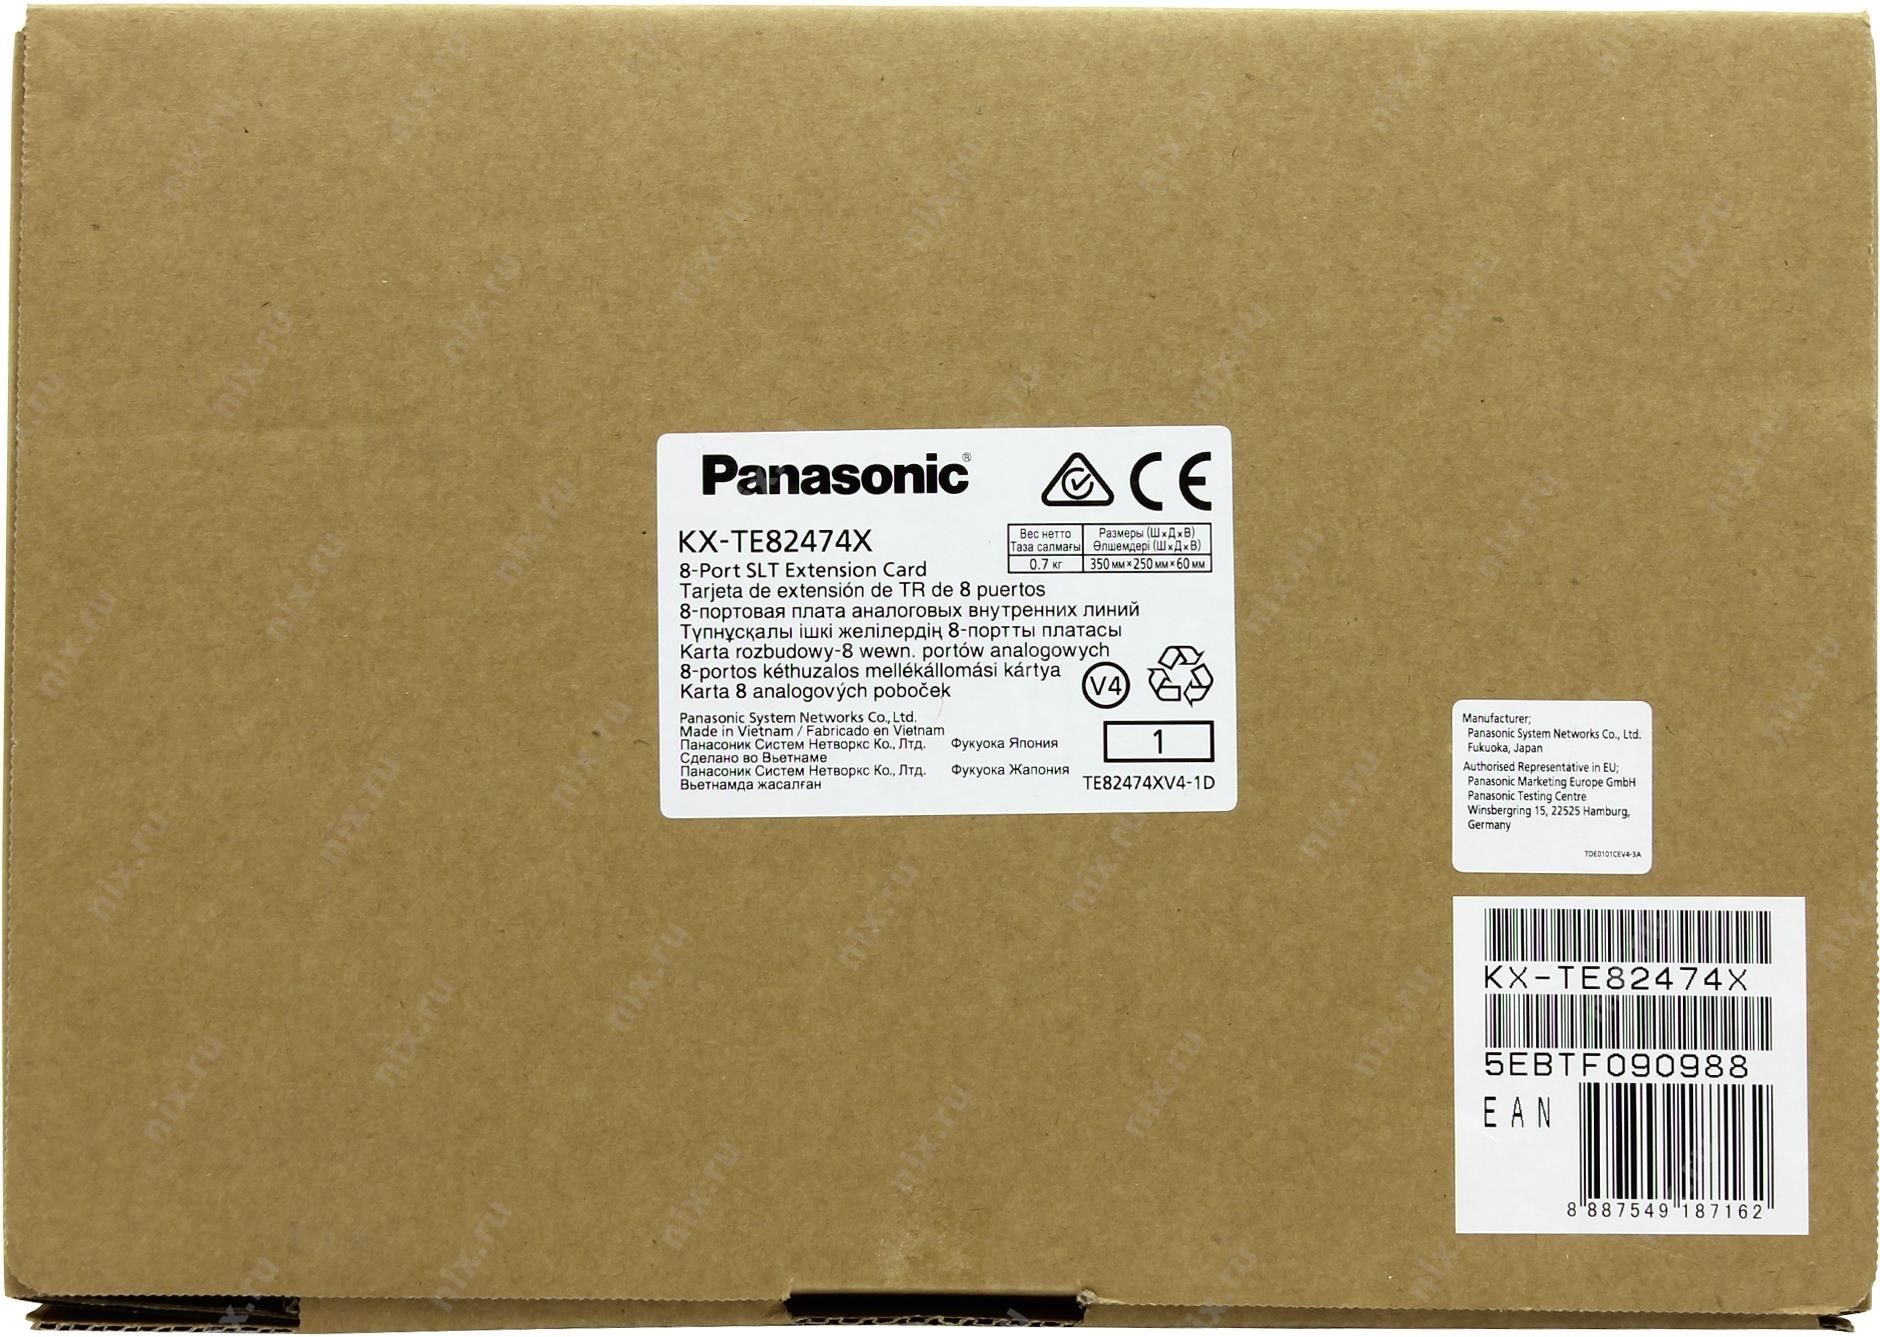 Panasonic Kx-Hdv130rub